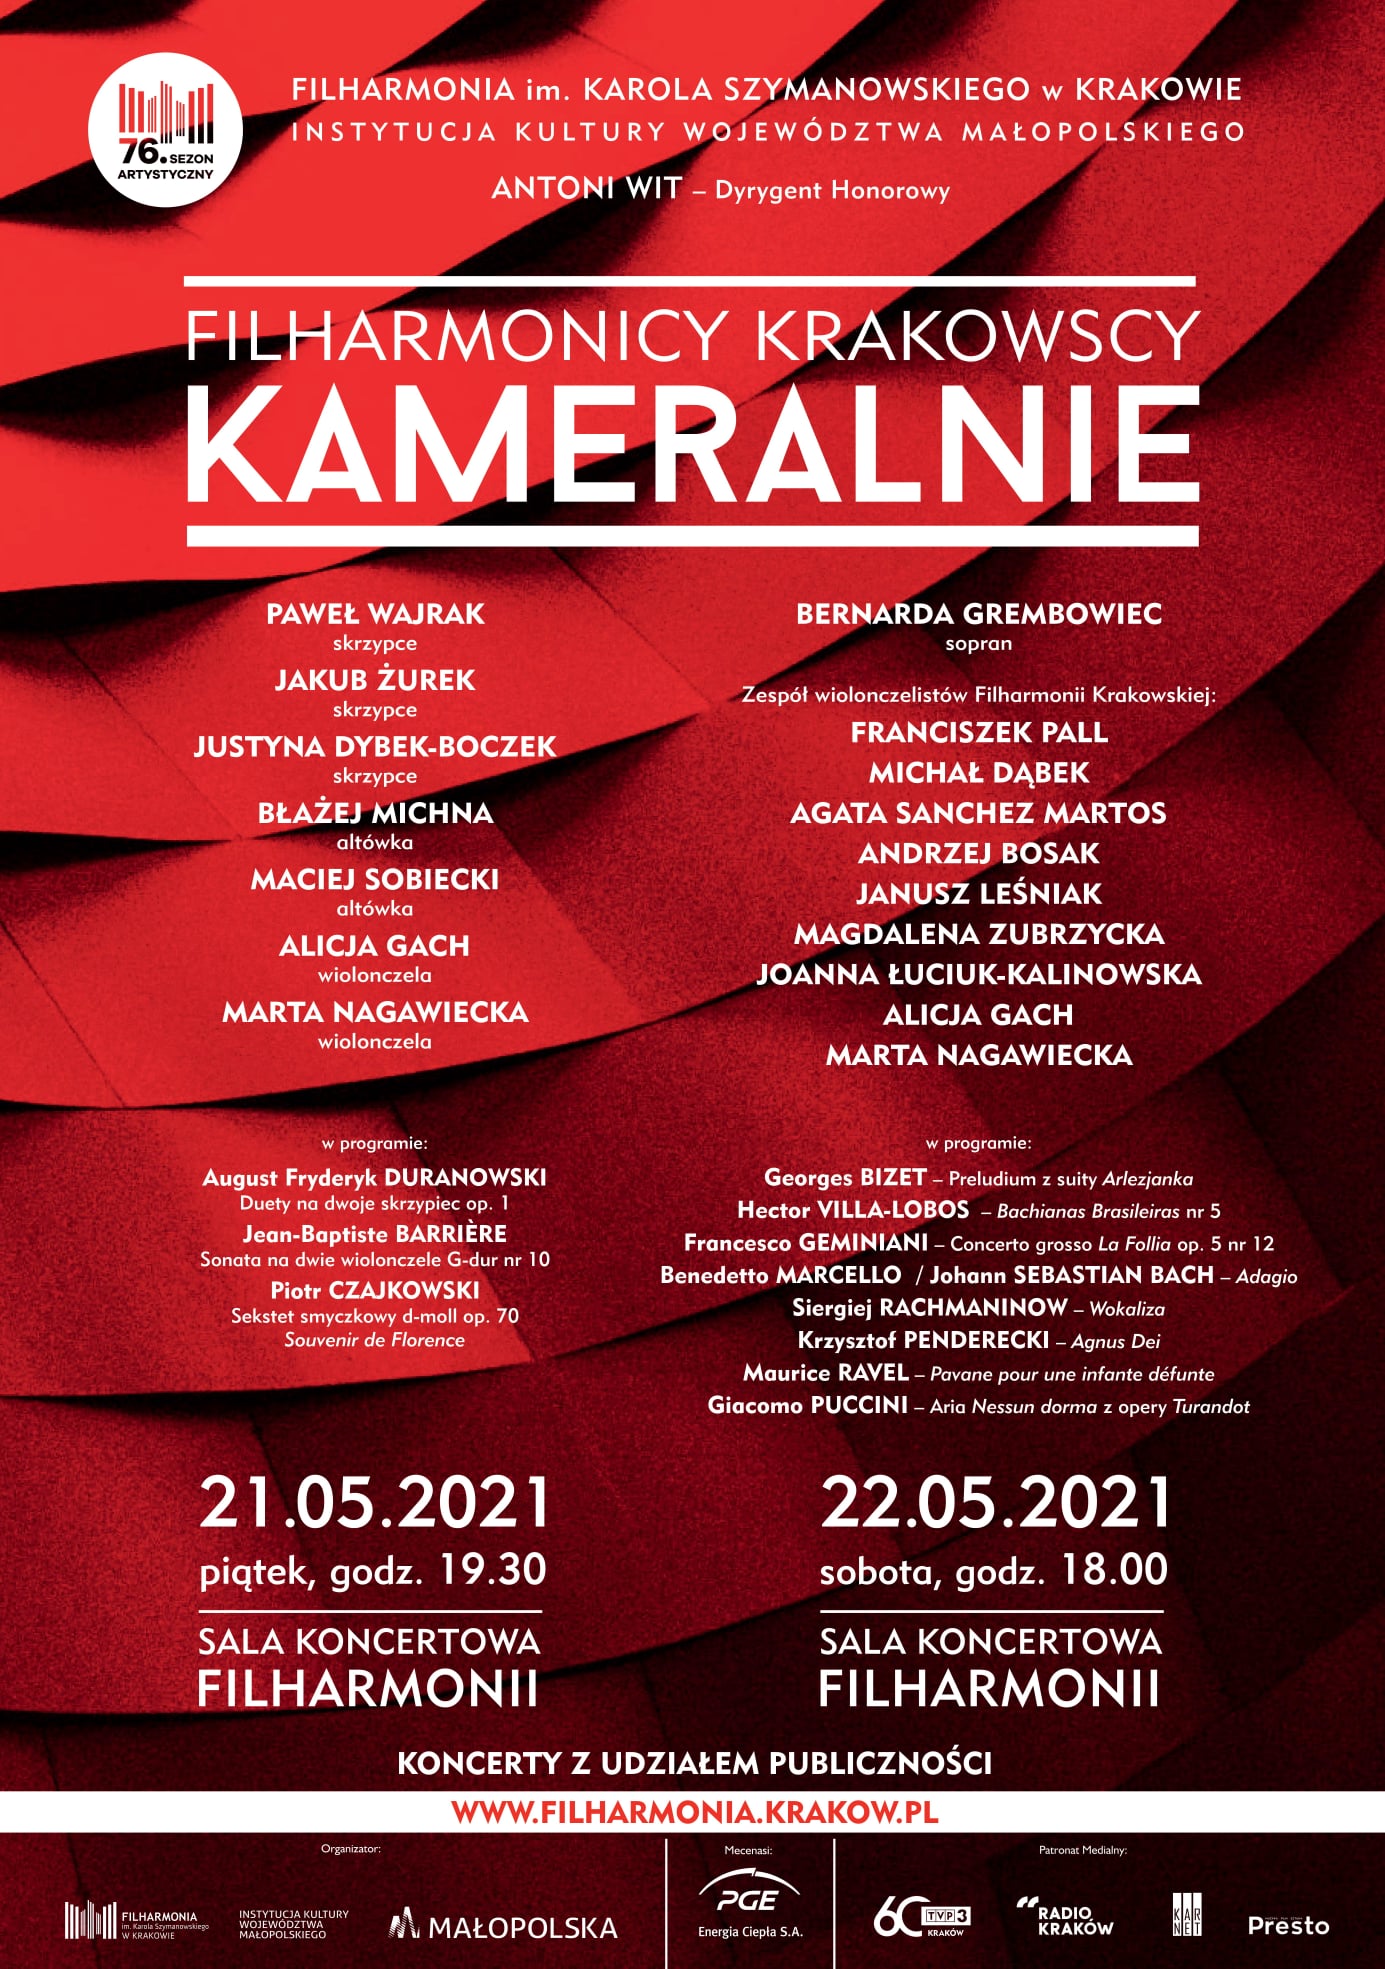 Grafika promująca koncert w Filharmonii.